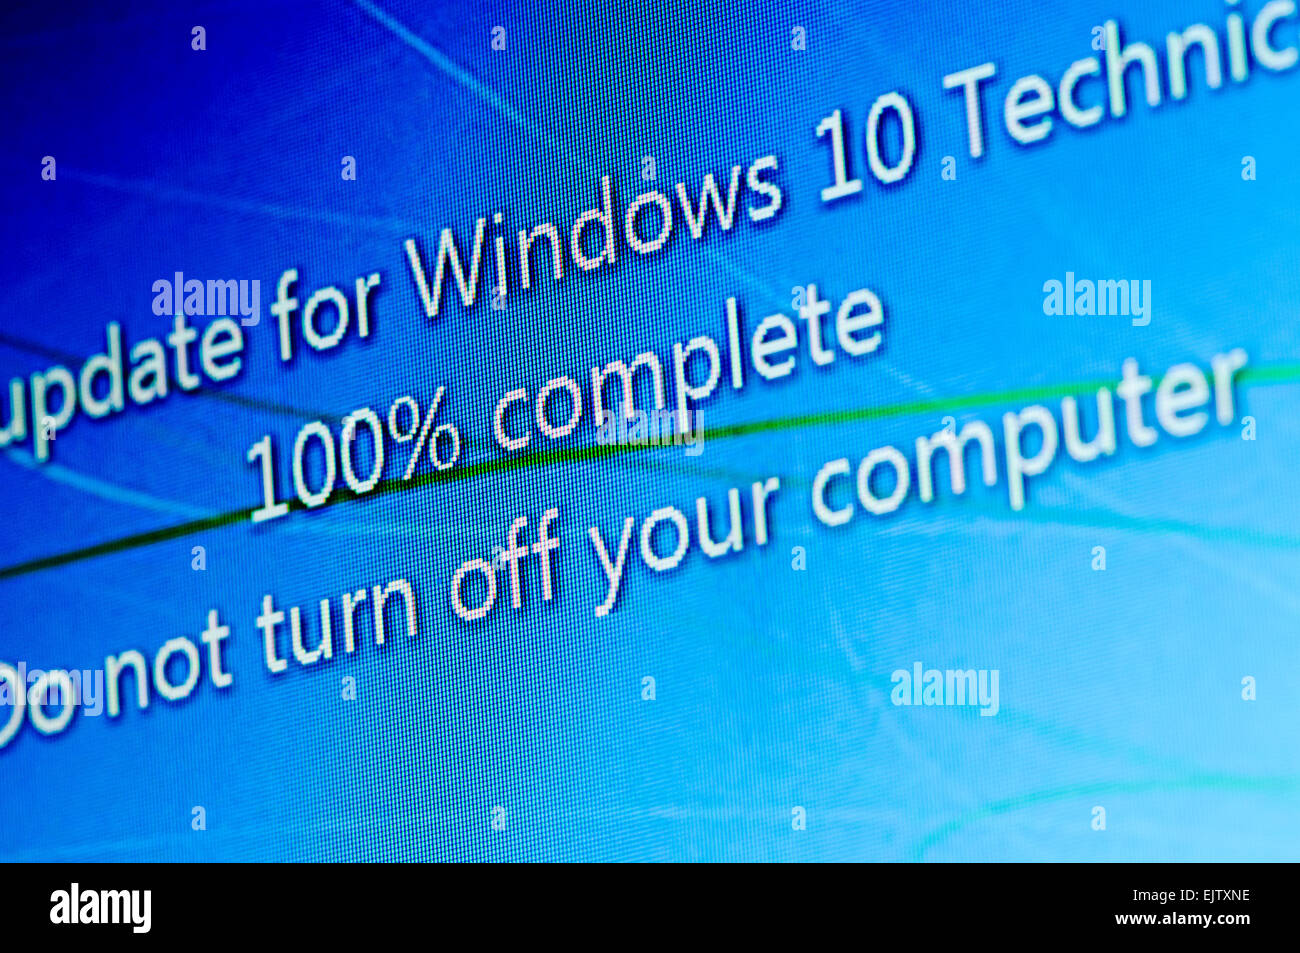 L'installation de Windows 10, un aperçu technique public beta version. Banque D'Images